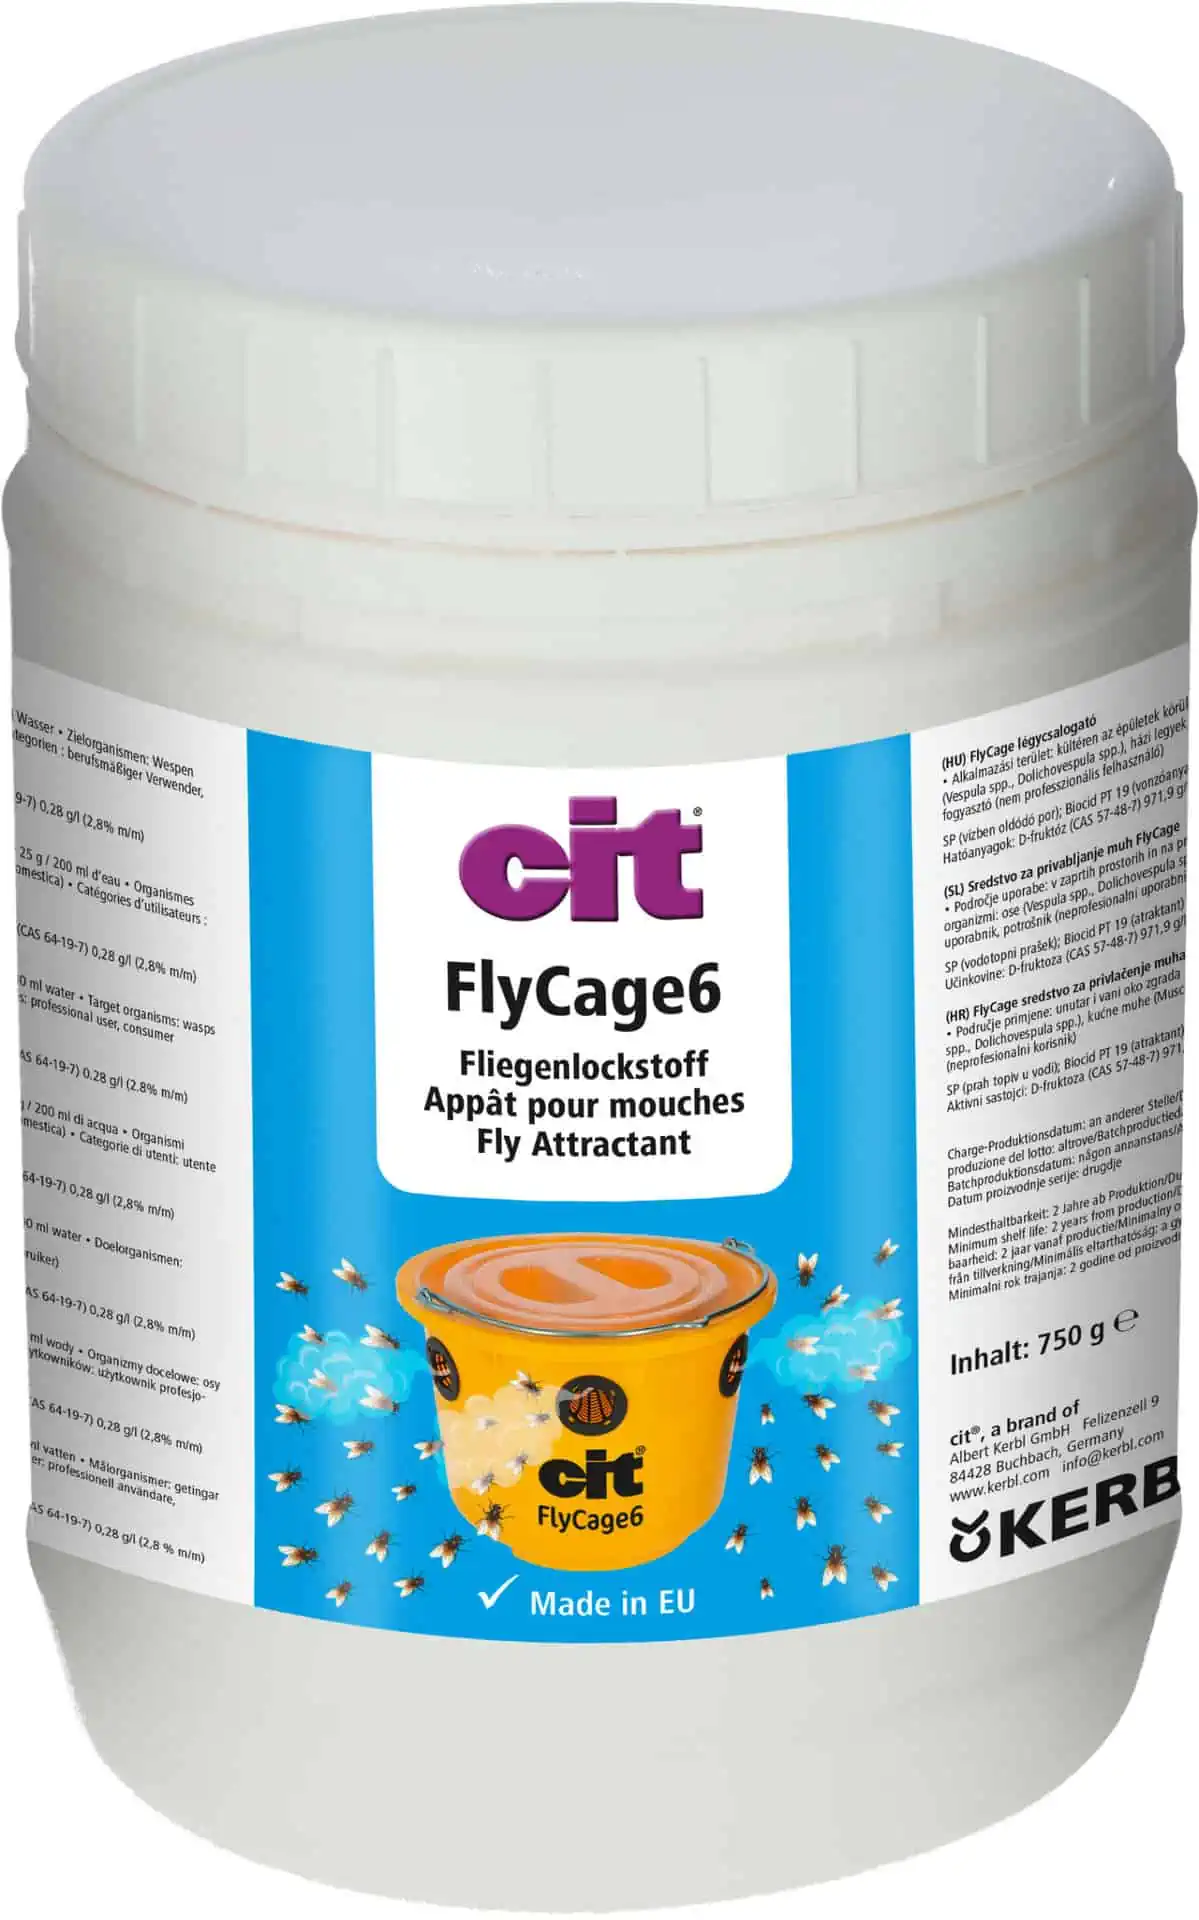 CIT FlyCage légycsalogató csali 750 g